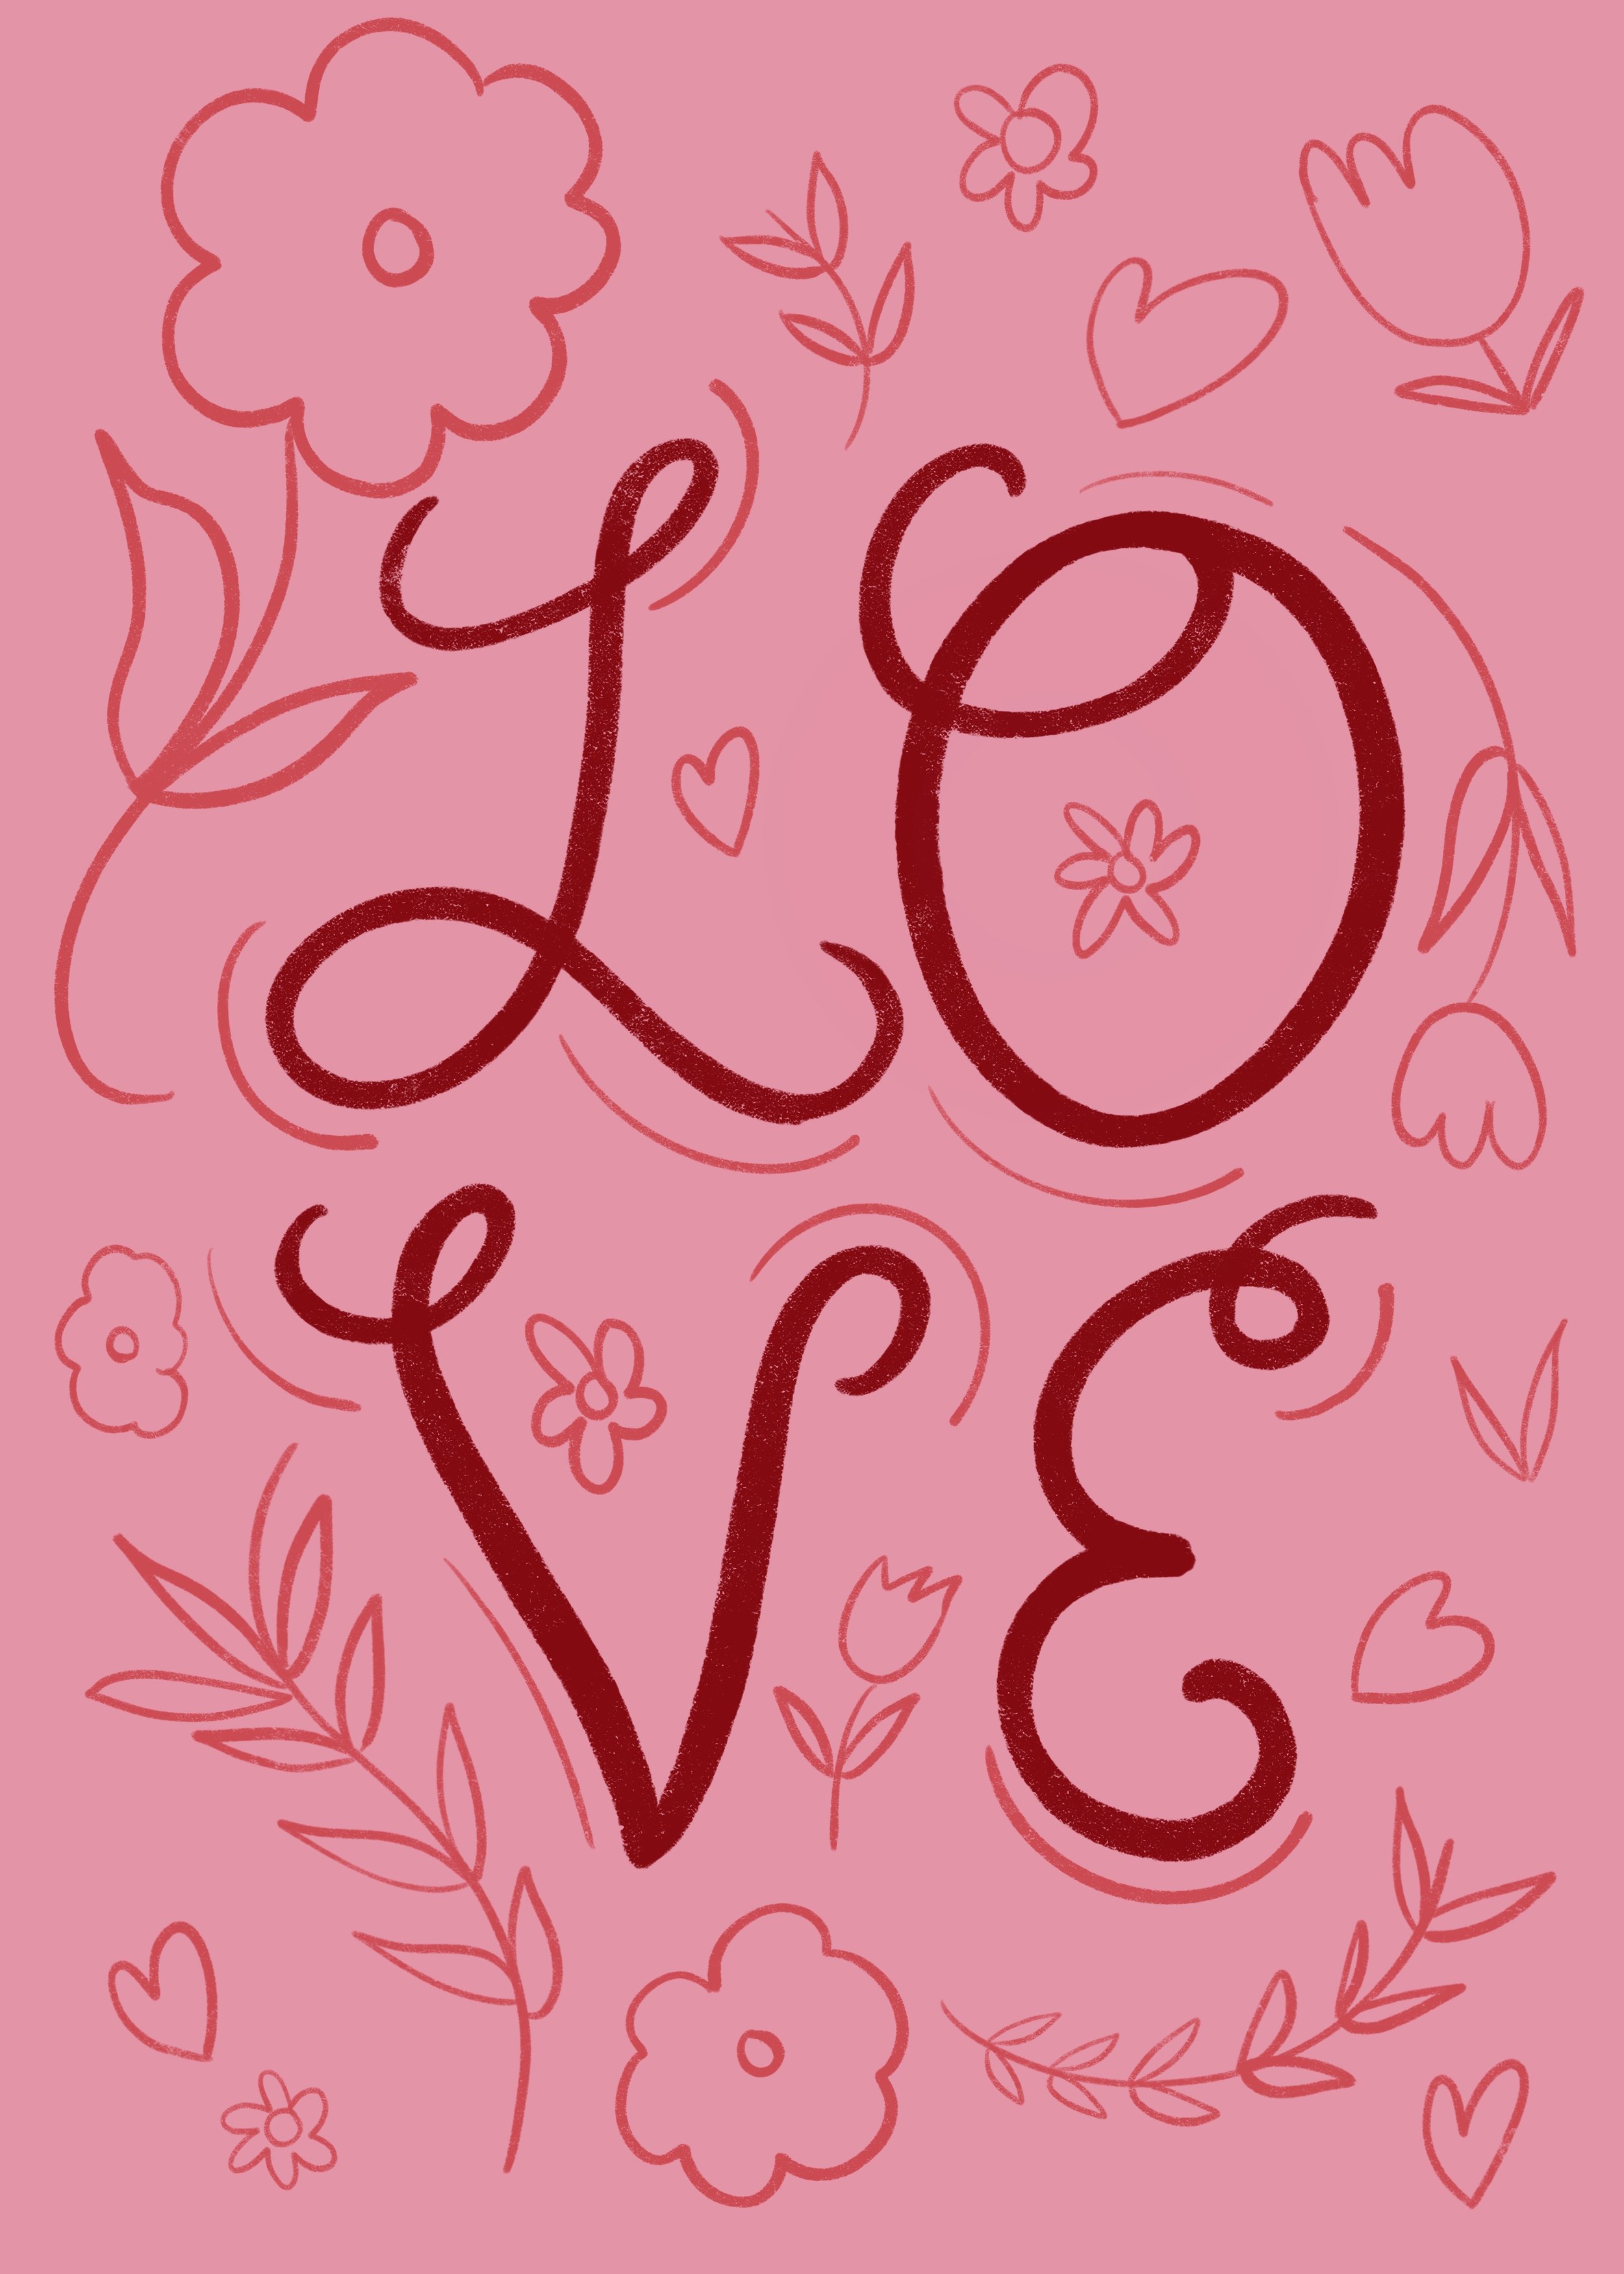 Love_Card.jpg